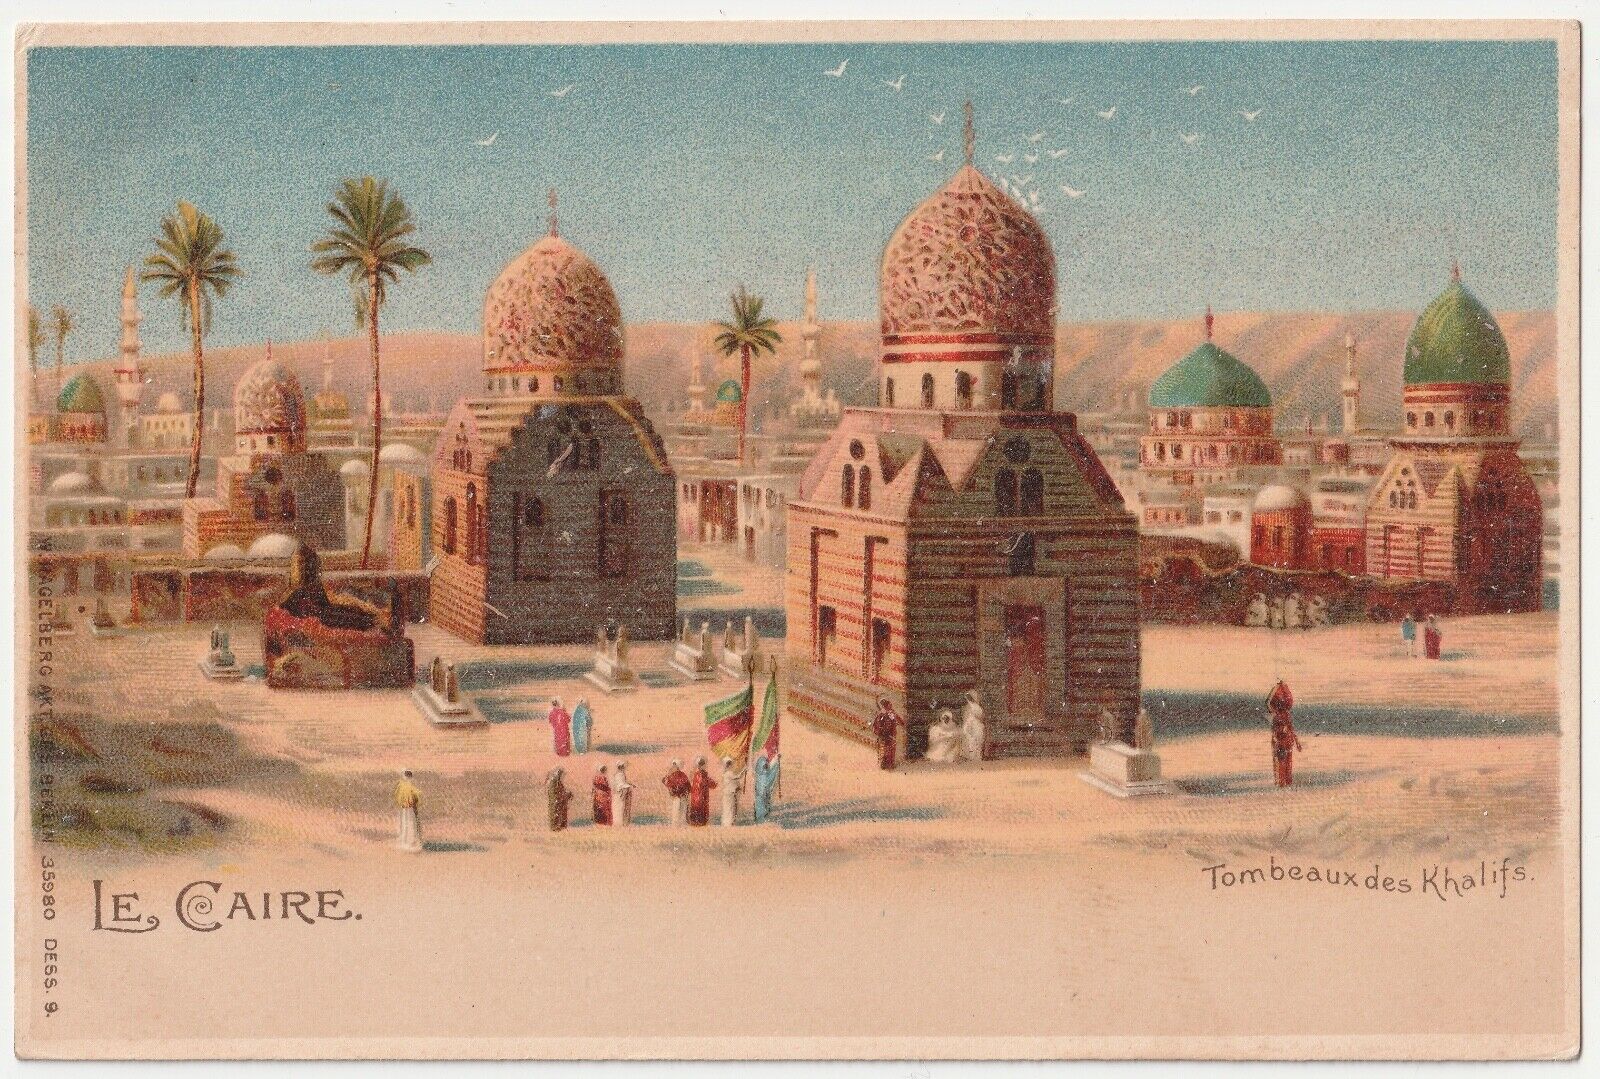 1904~Le Caire Cairo Egypt~Tombs of Khalifs~Khalifa City of Dead~Antique Postcard